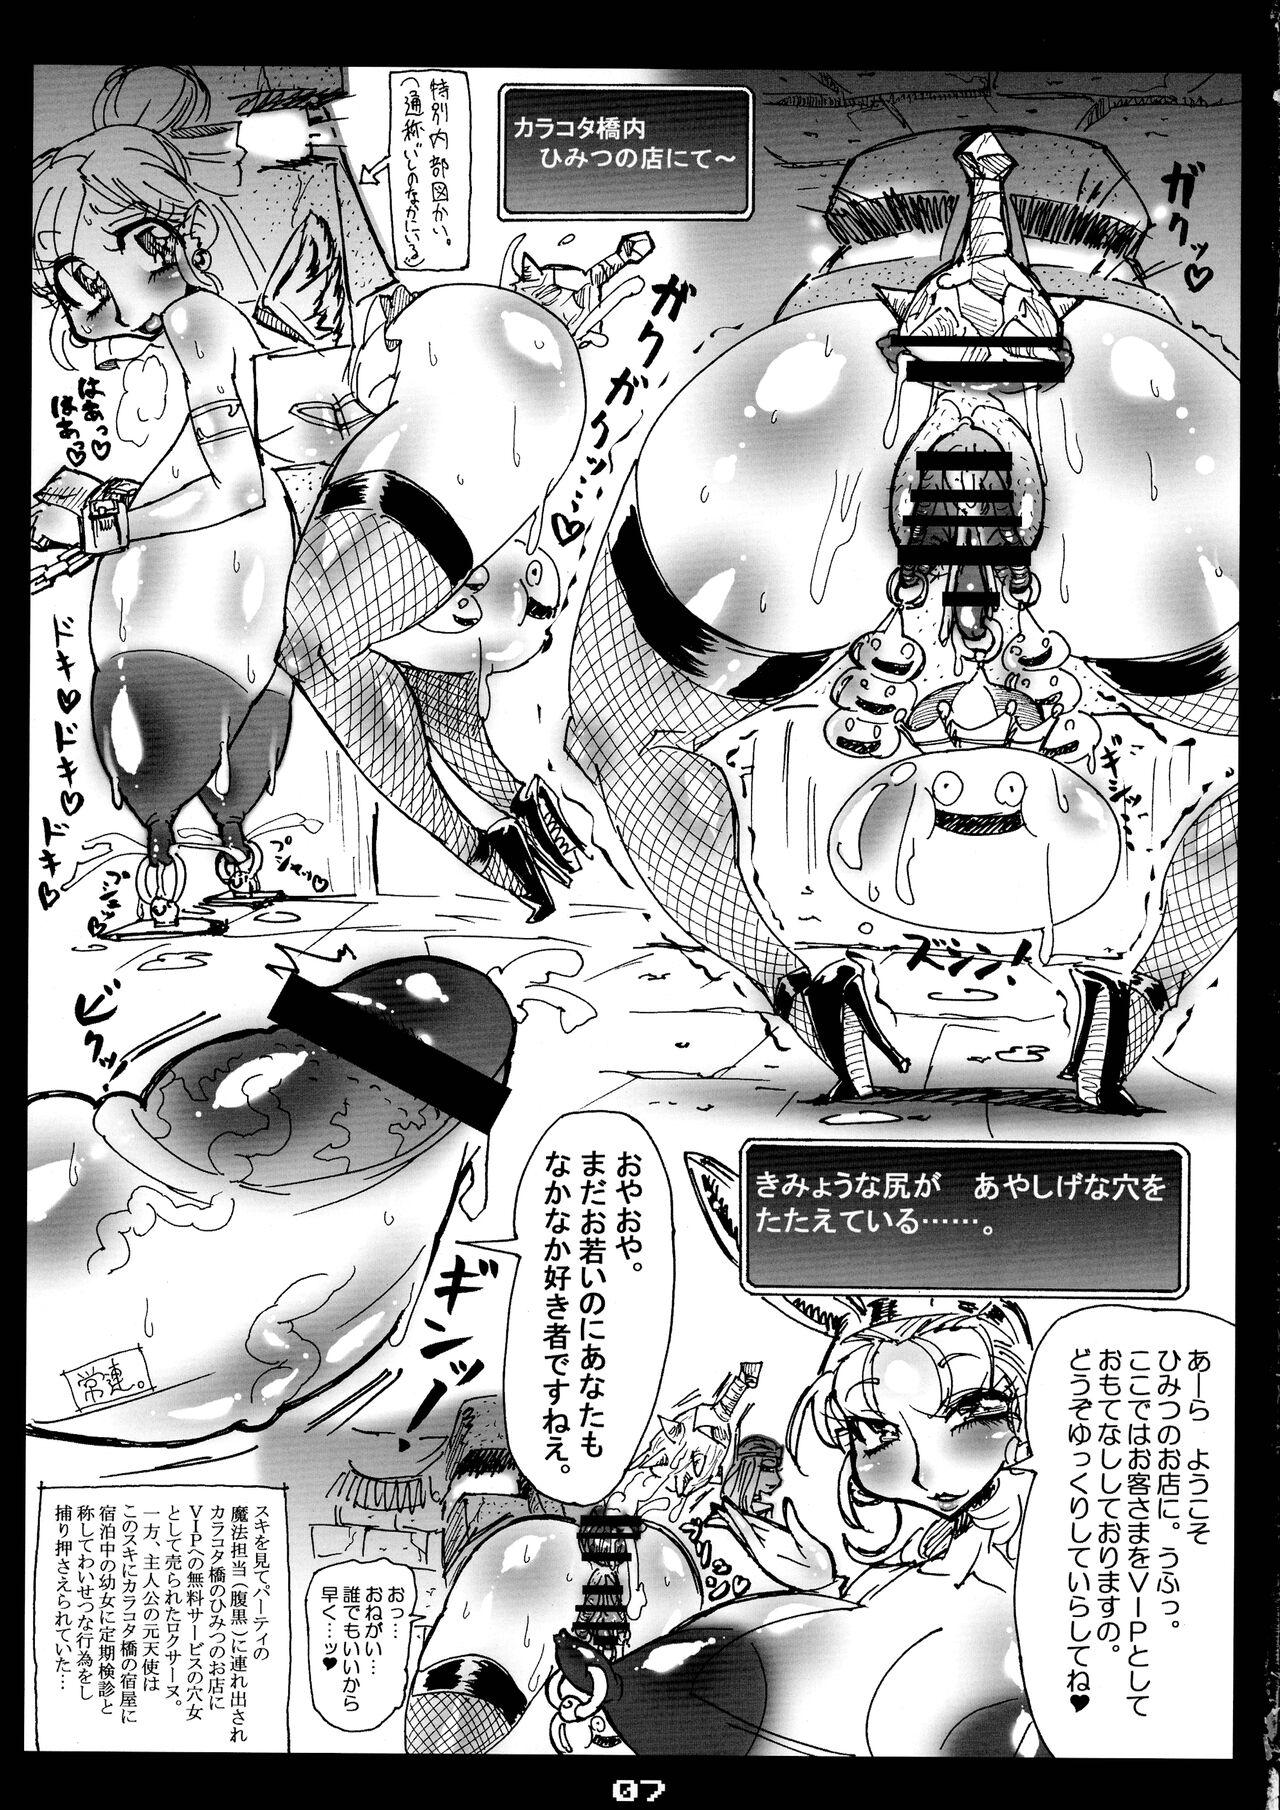 Fit MG Megabit 9 - Dragon quest Gays - Page 7